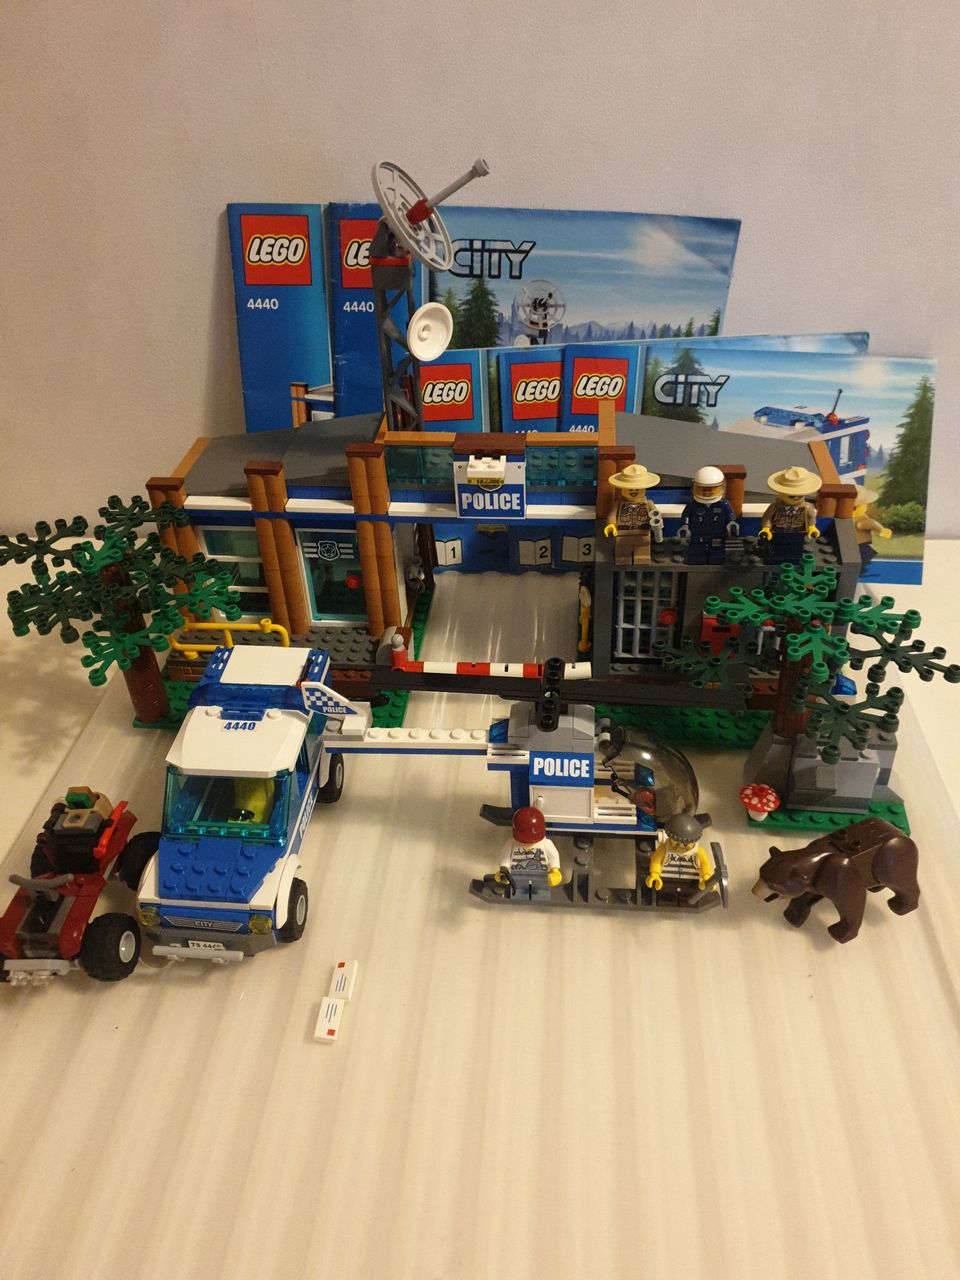 Lego city 4440